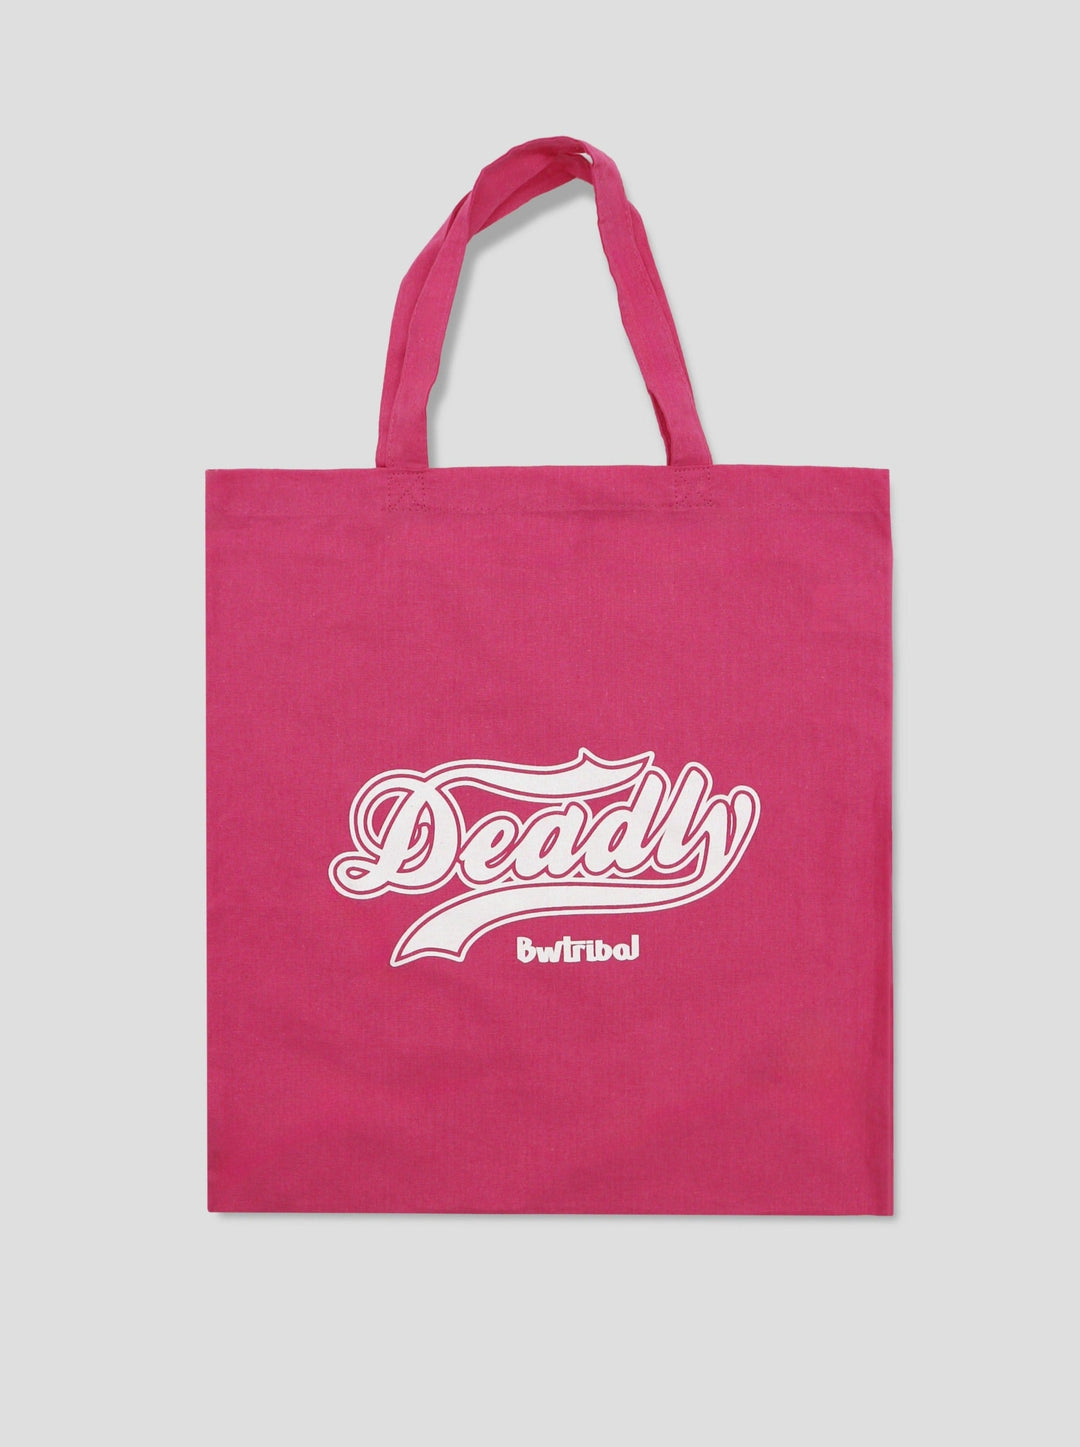 Deadly - Canvas bag